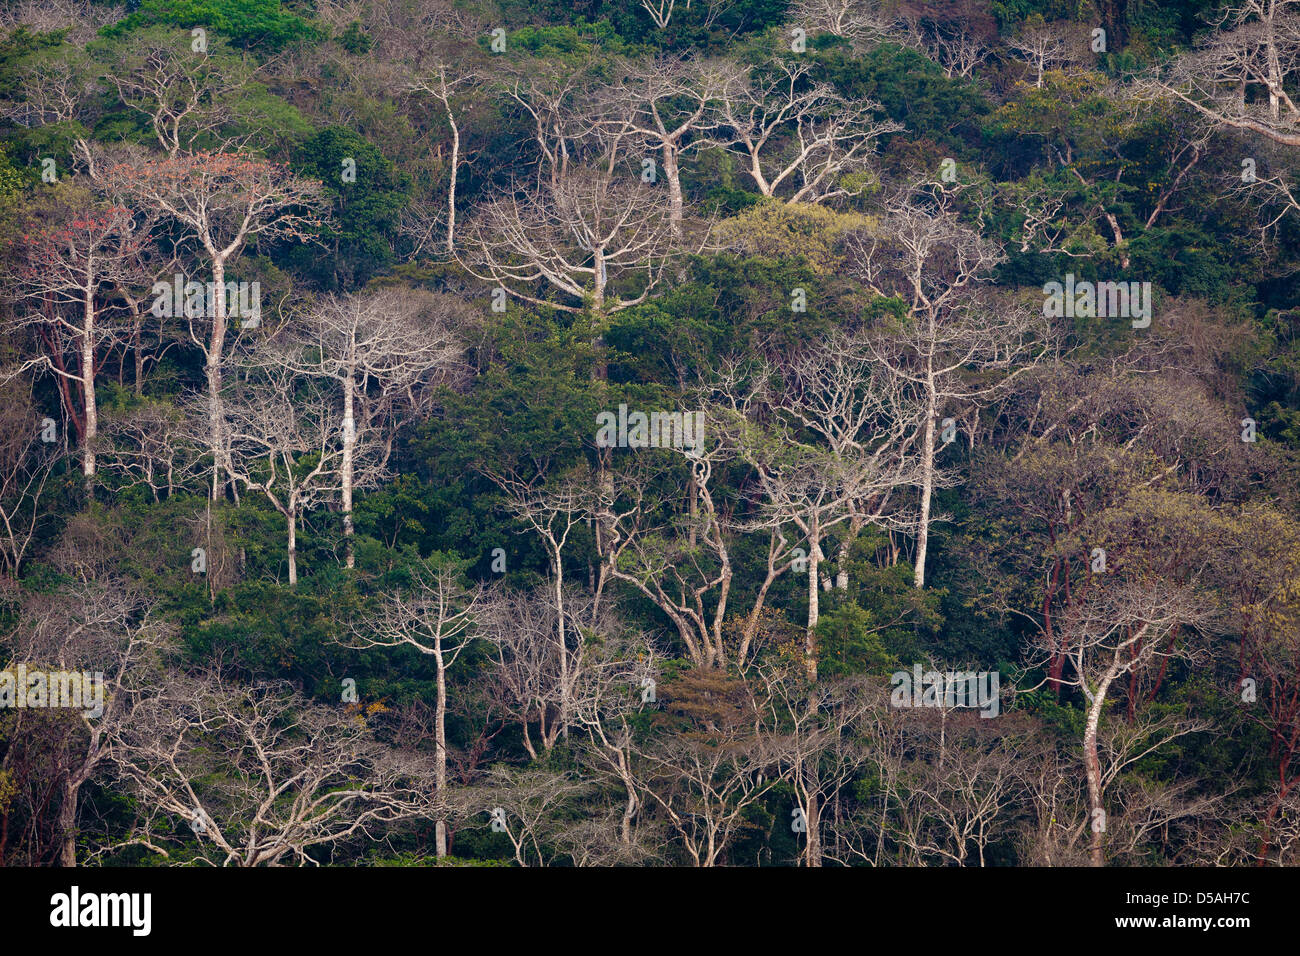 Selva tropical de tierras bajas y grandes árboles de Cuipo, en el lado este del río Chagres en el Parque nacional Soberanía, República de Panamá. Foto de stock